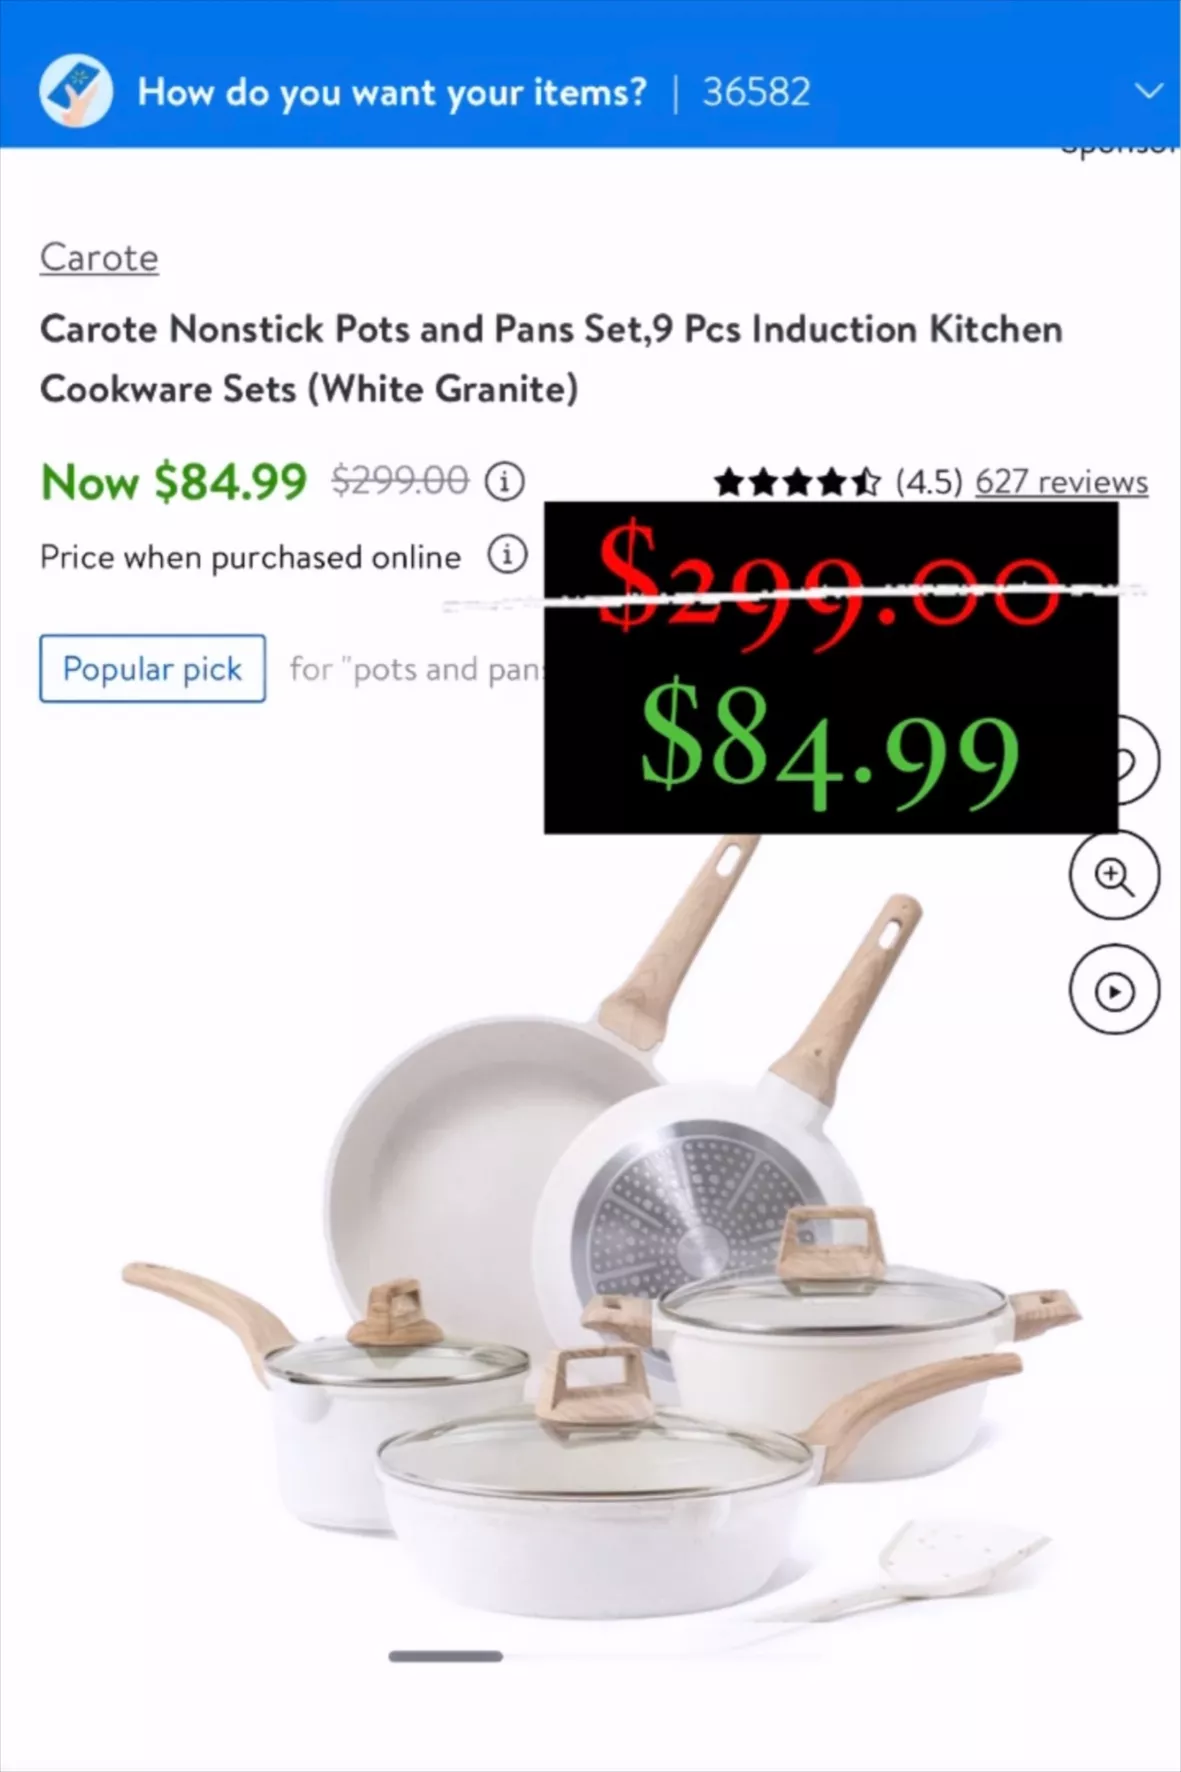 Carote 9- piece Nonstick White Granite Cookware Set